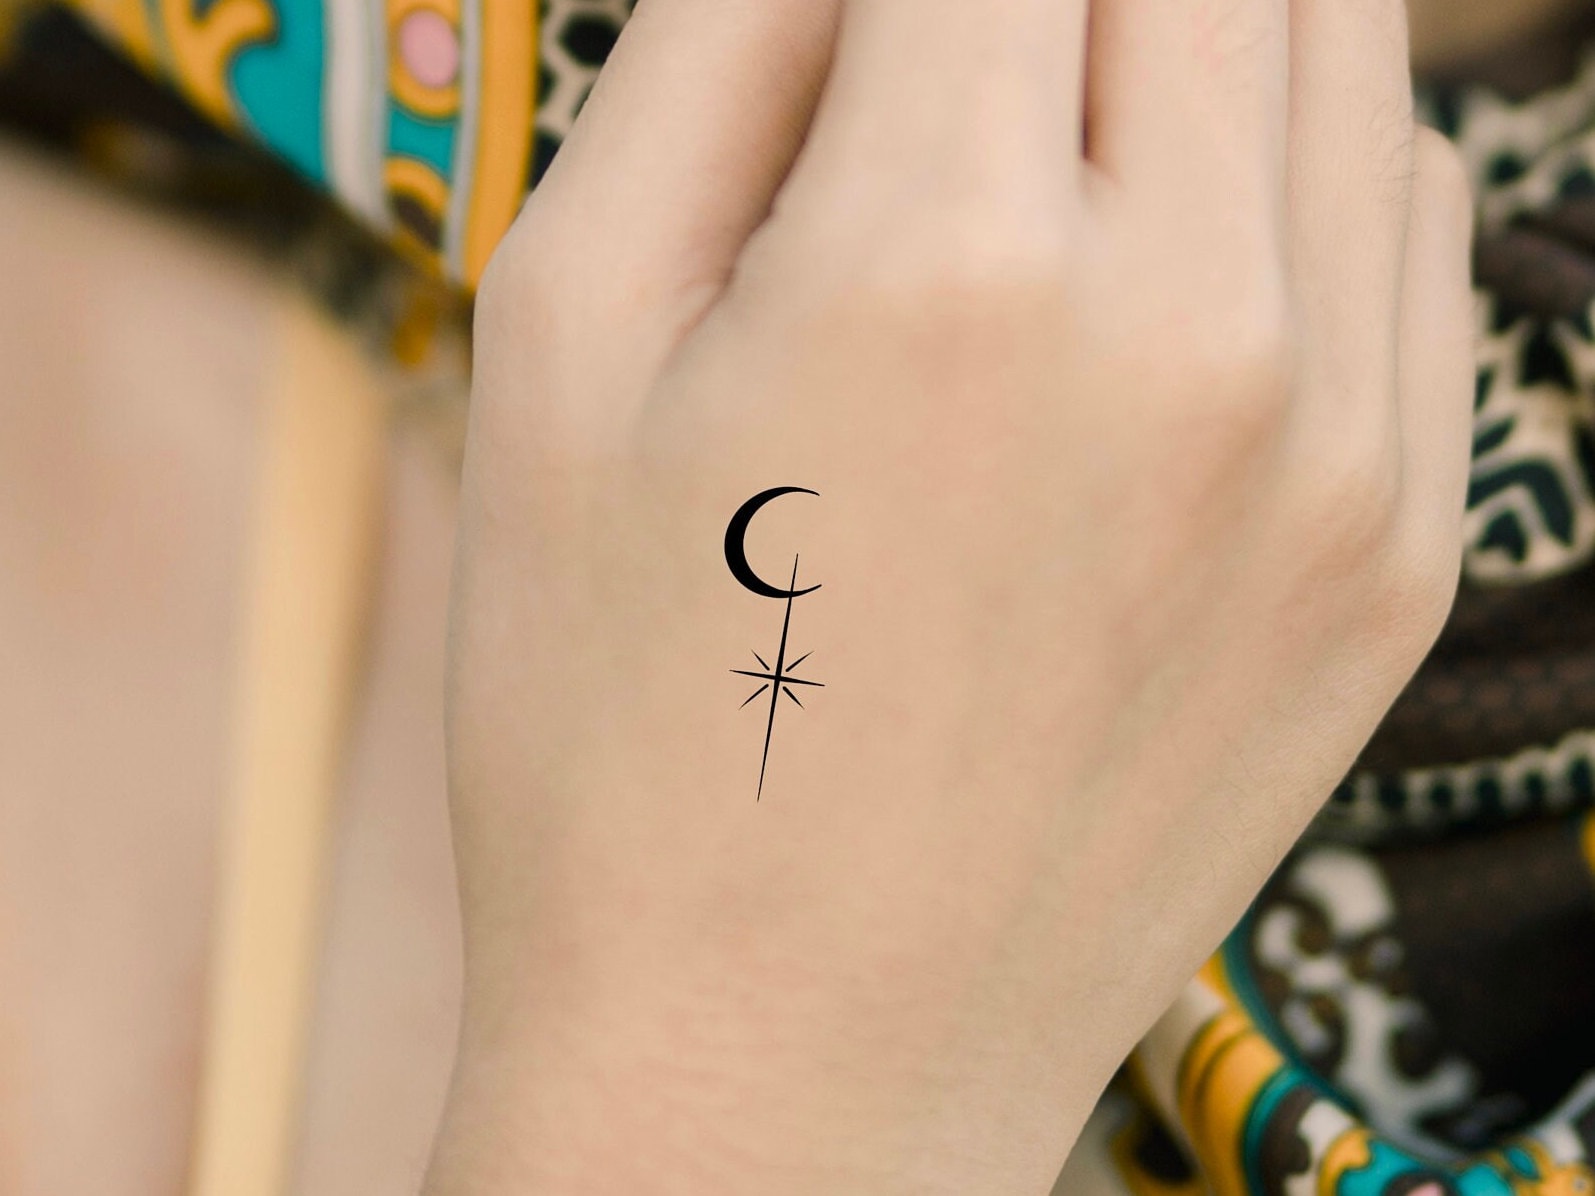 Minimalist sun moon and star tattoo on the inner